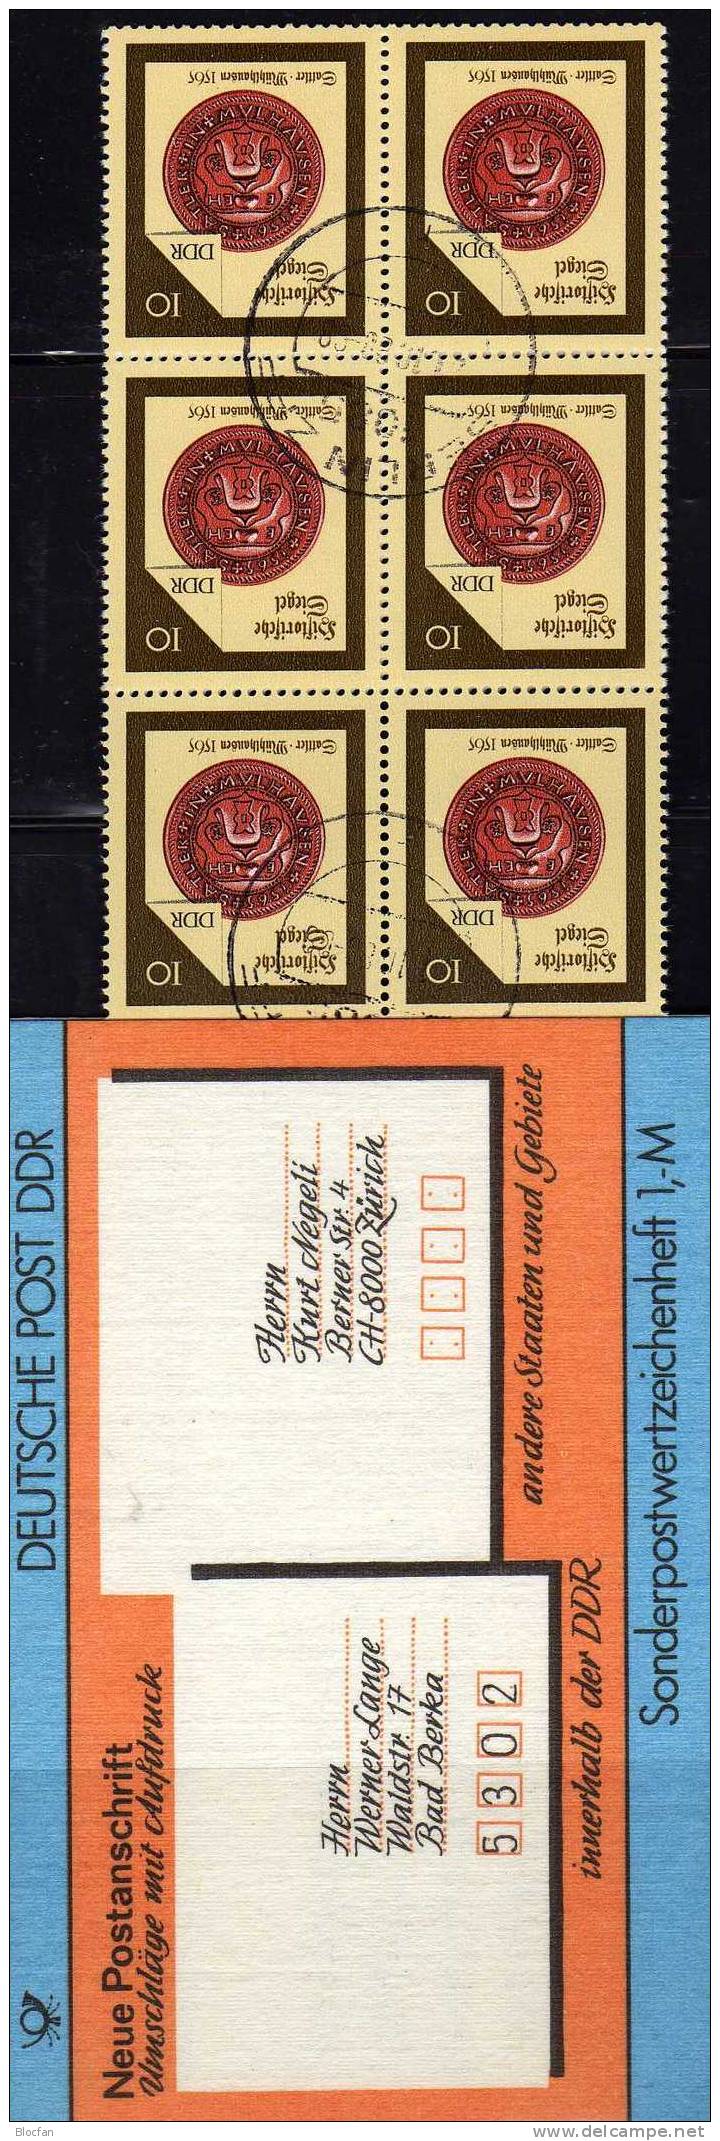 SMH 33 Internationale Anschrift 1987 Adressen DDR 3156 10x Plus SMHD33 O 9€ Mit Siegel Der Sattler Booklet From Germany - Markenheftchen